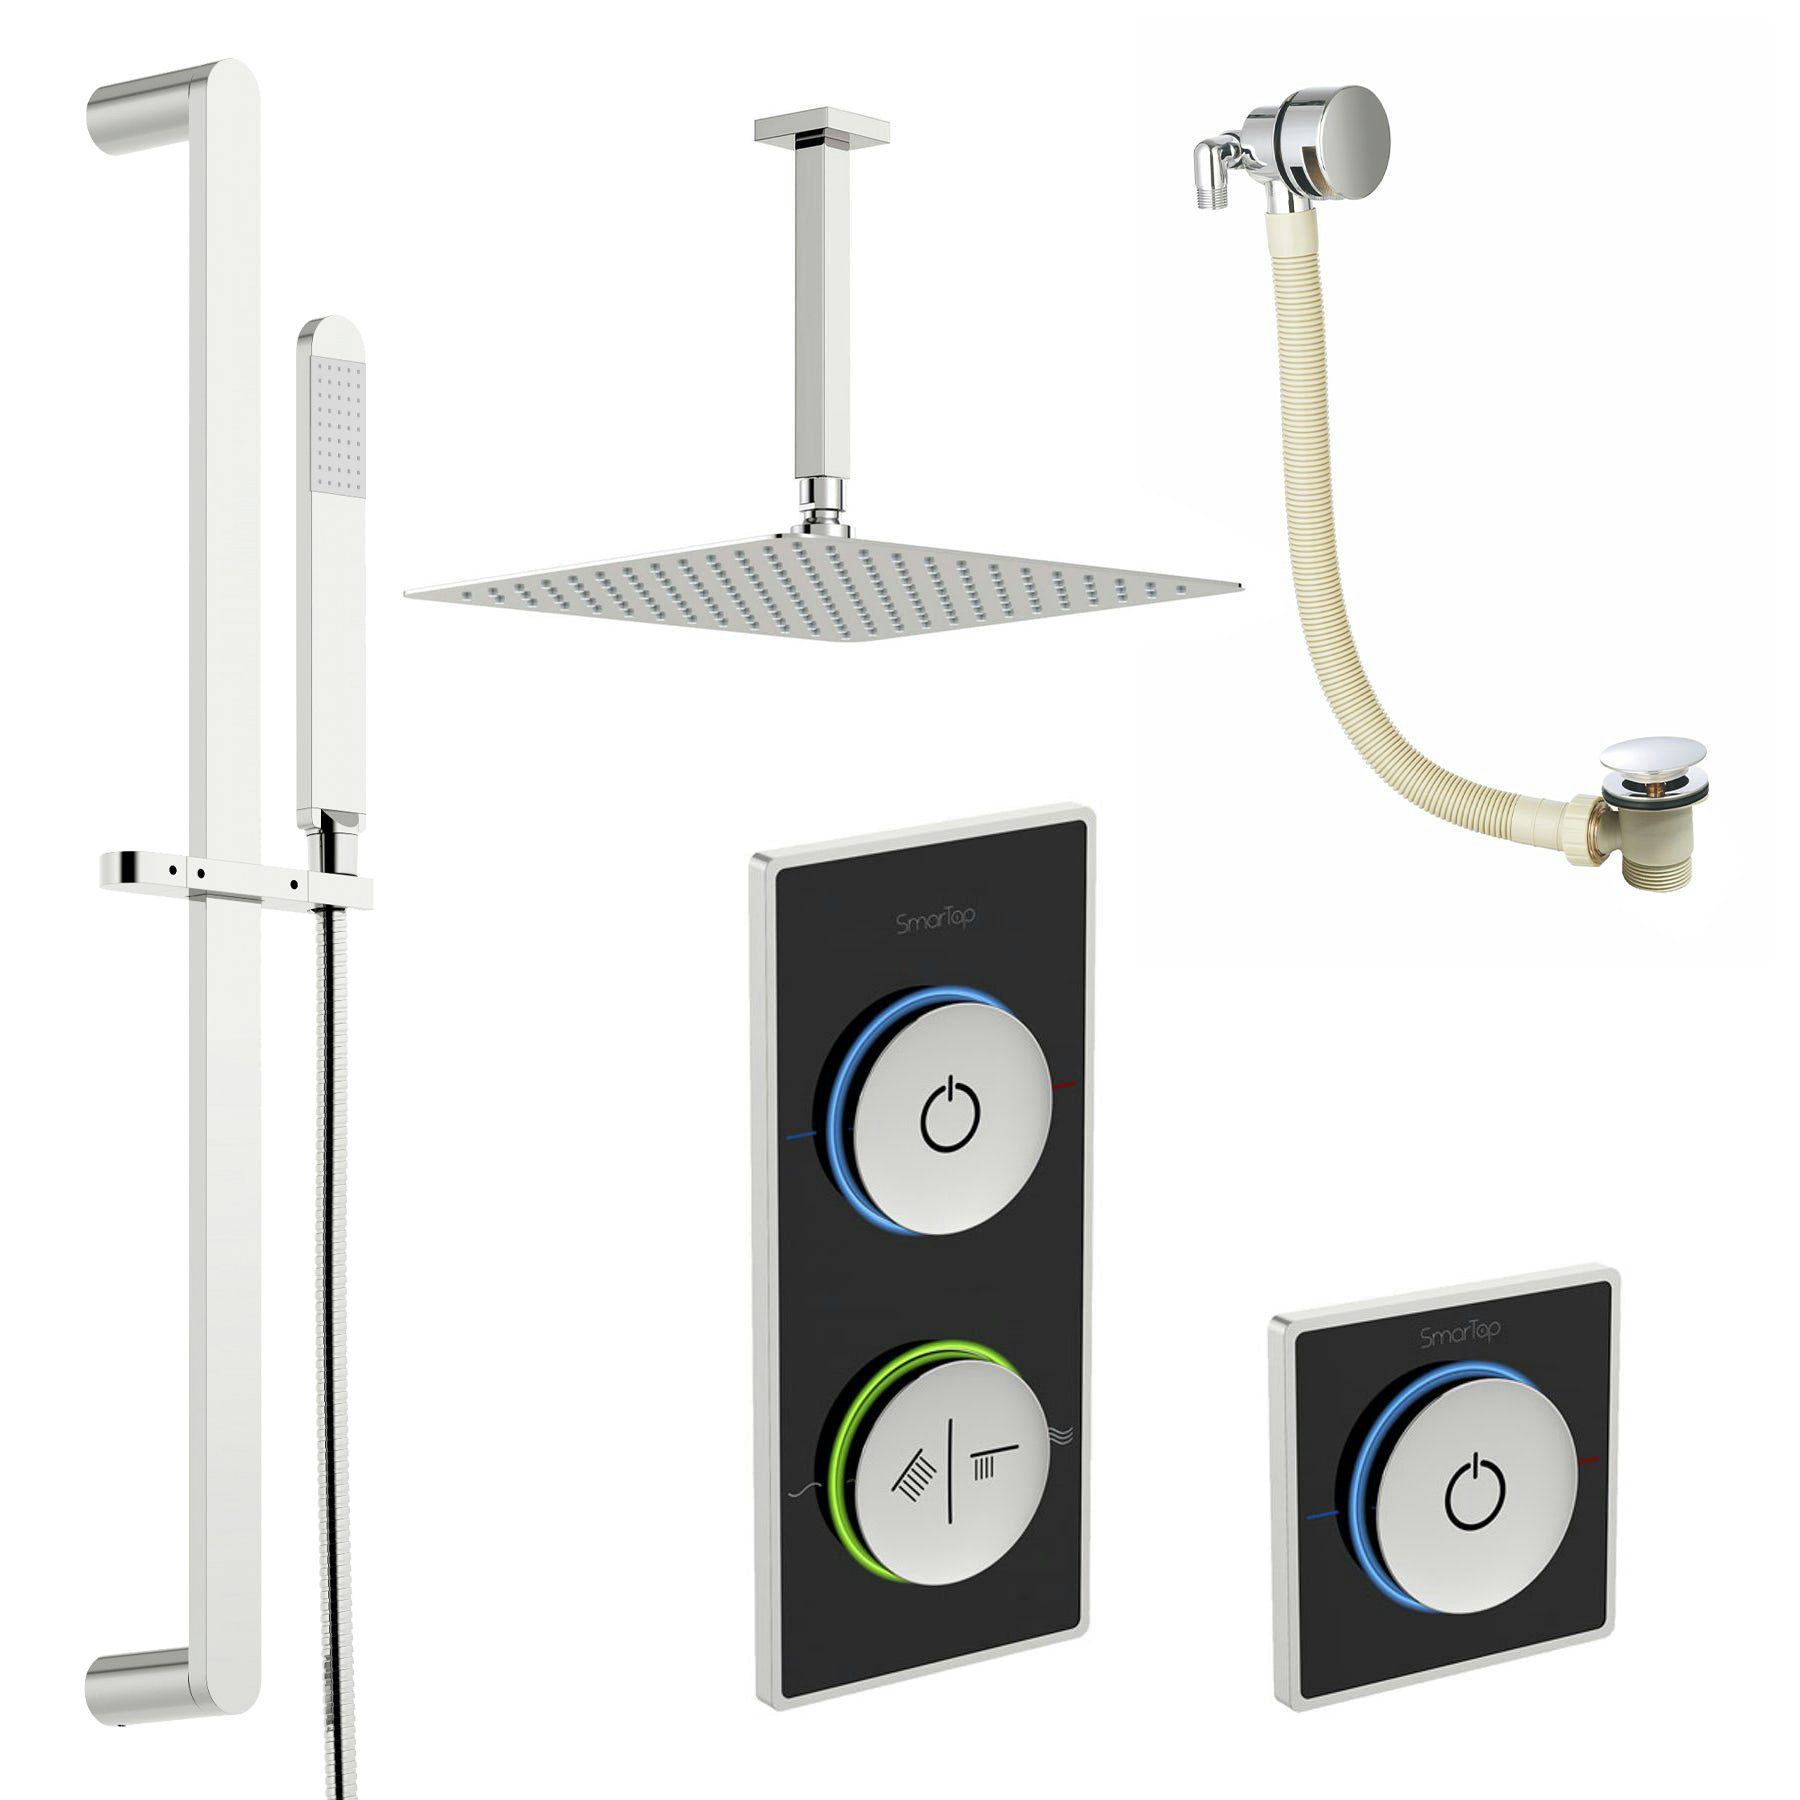 SmarTap black smart shower system with complete square ceiling shower bath set